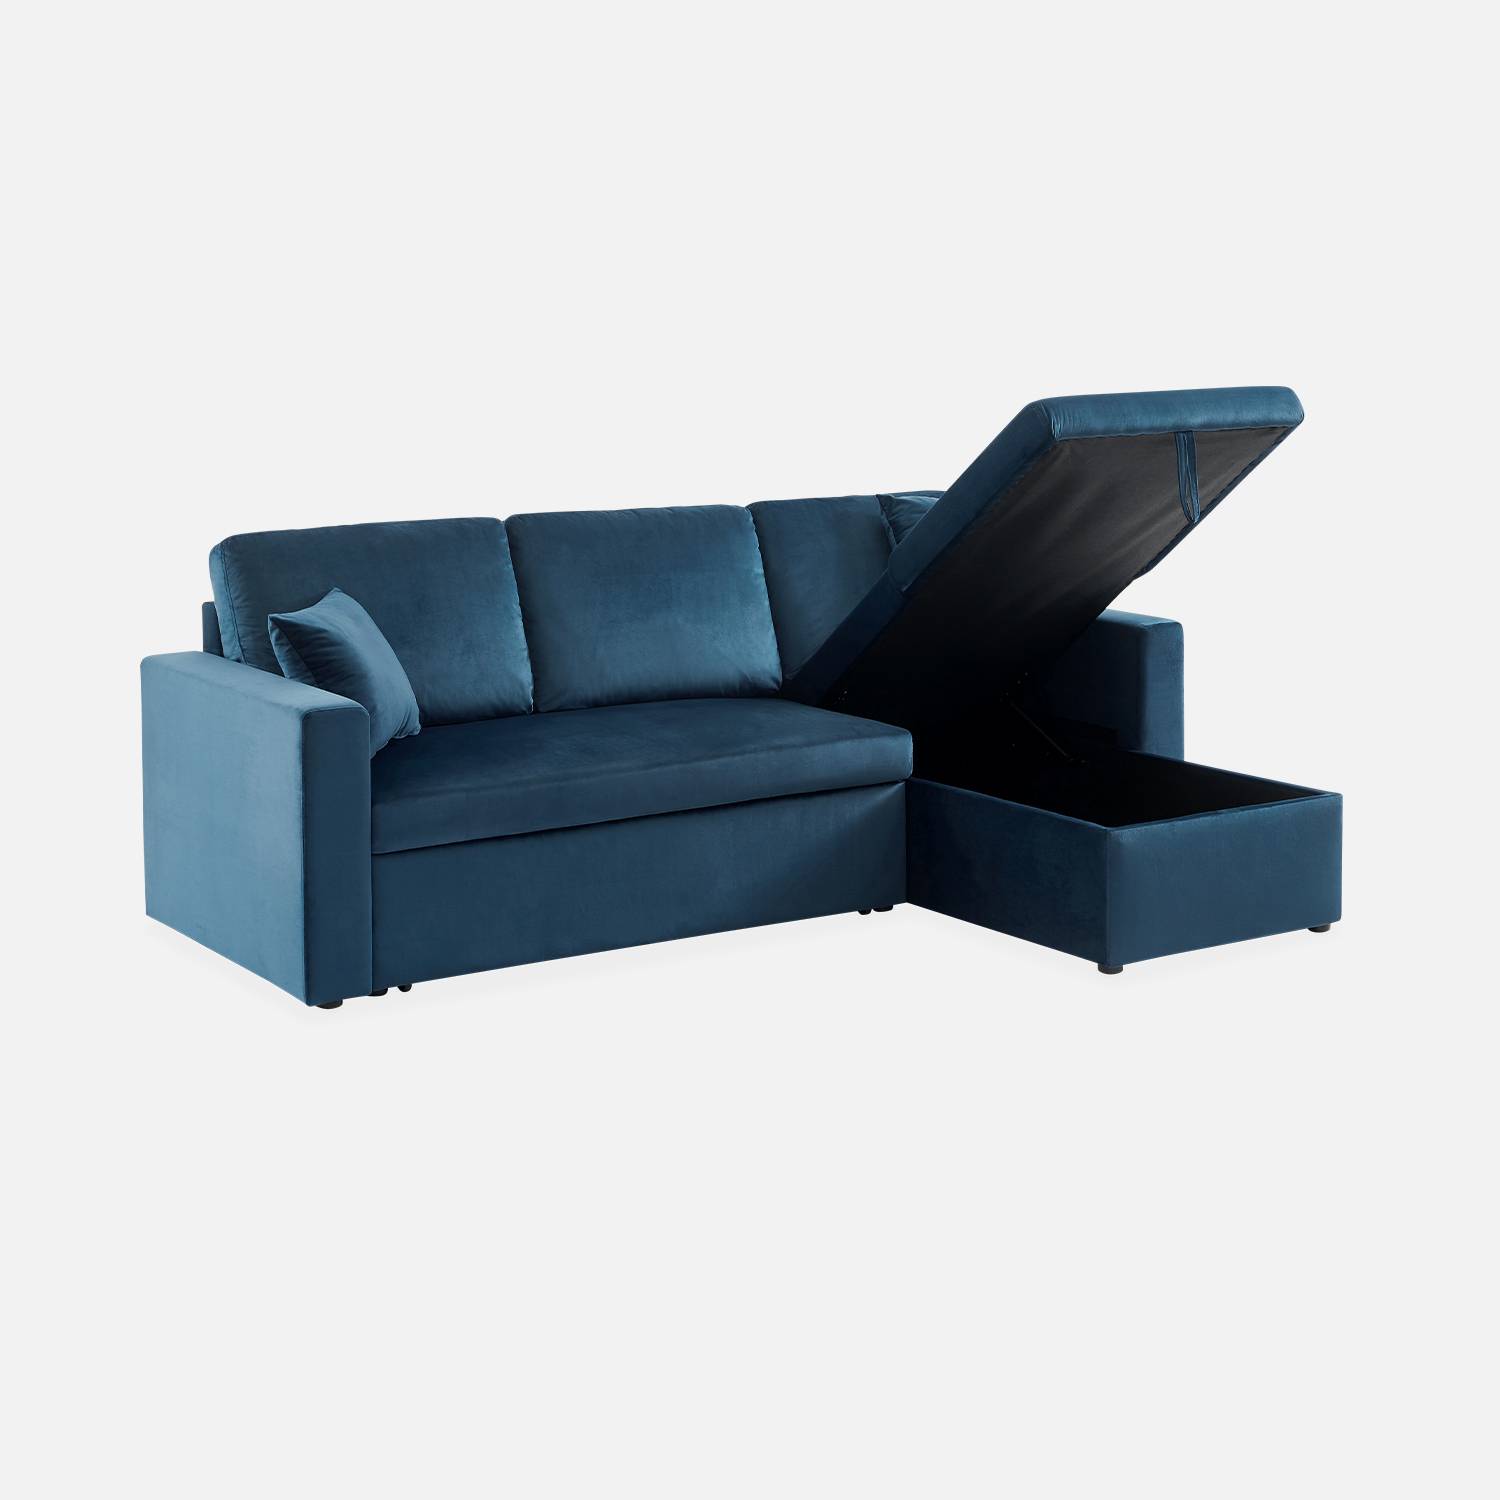 Sofá esquinero convertible en terciopelo azul petróleo, 3 plazas, sillón esquinero reversible, caja de almacenaje, cama modular Photo6